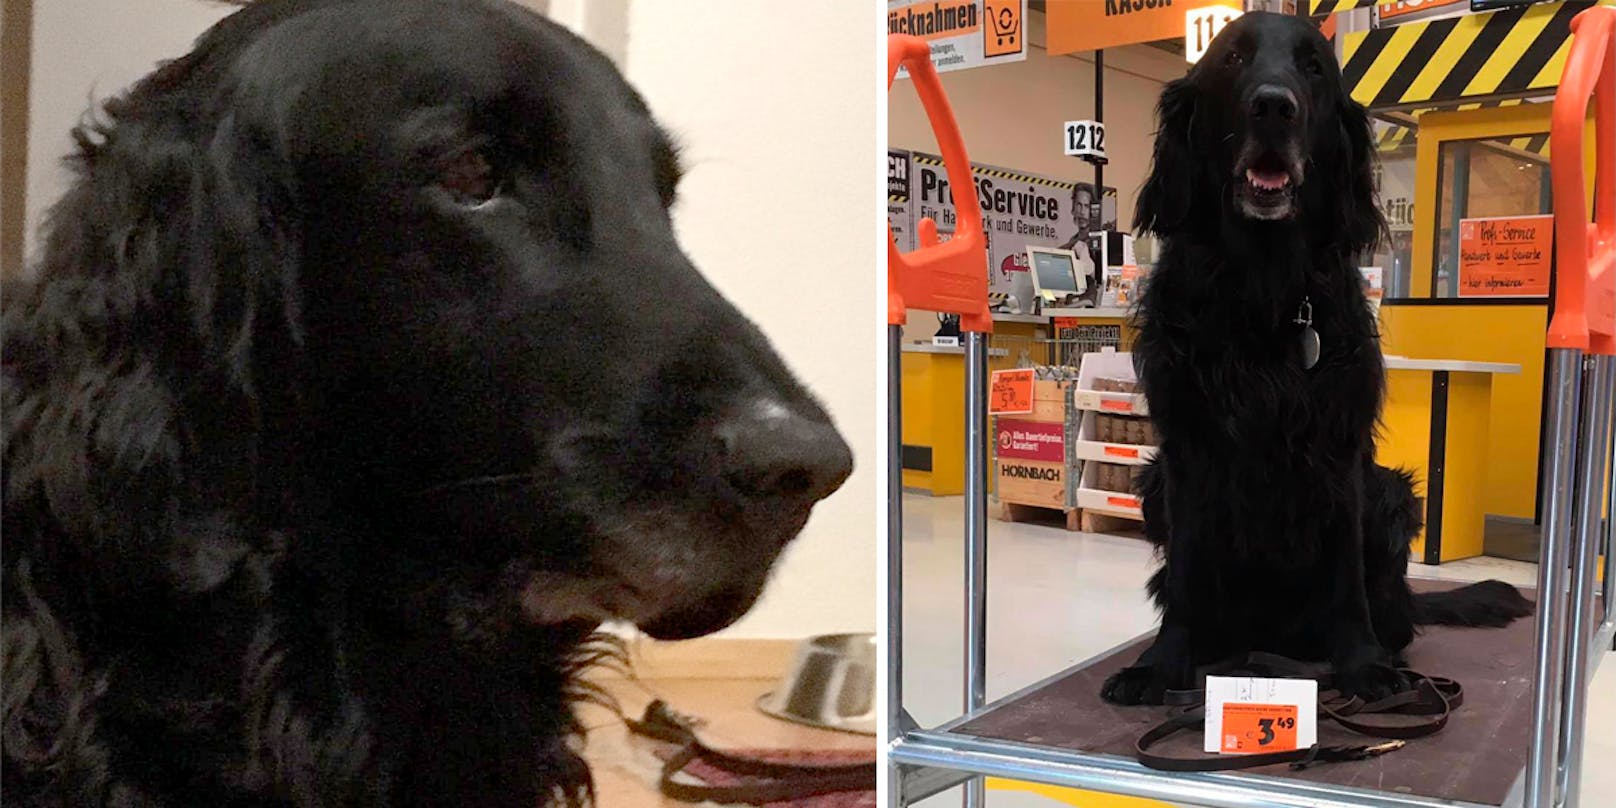 Rettungshund "Romeo" wird seit dem Nachmittag des 5. Oktober 2020 vermisst